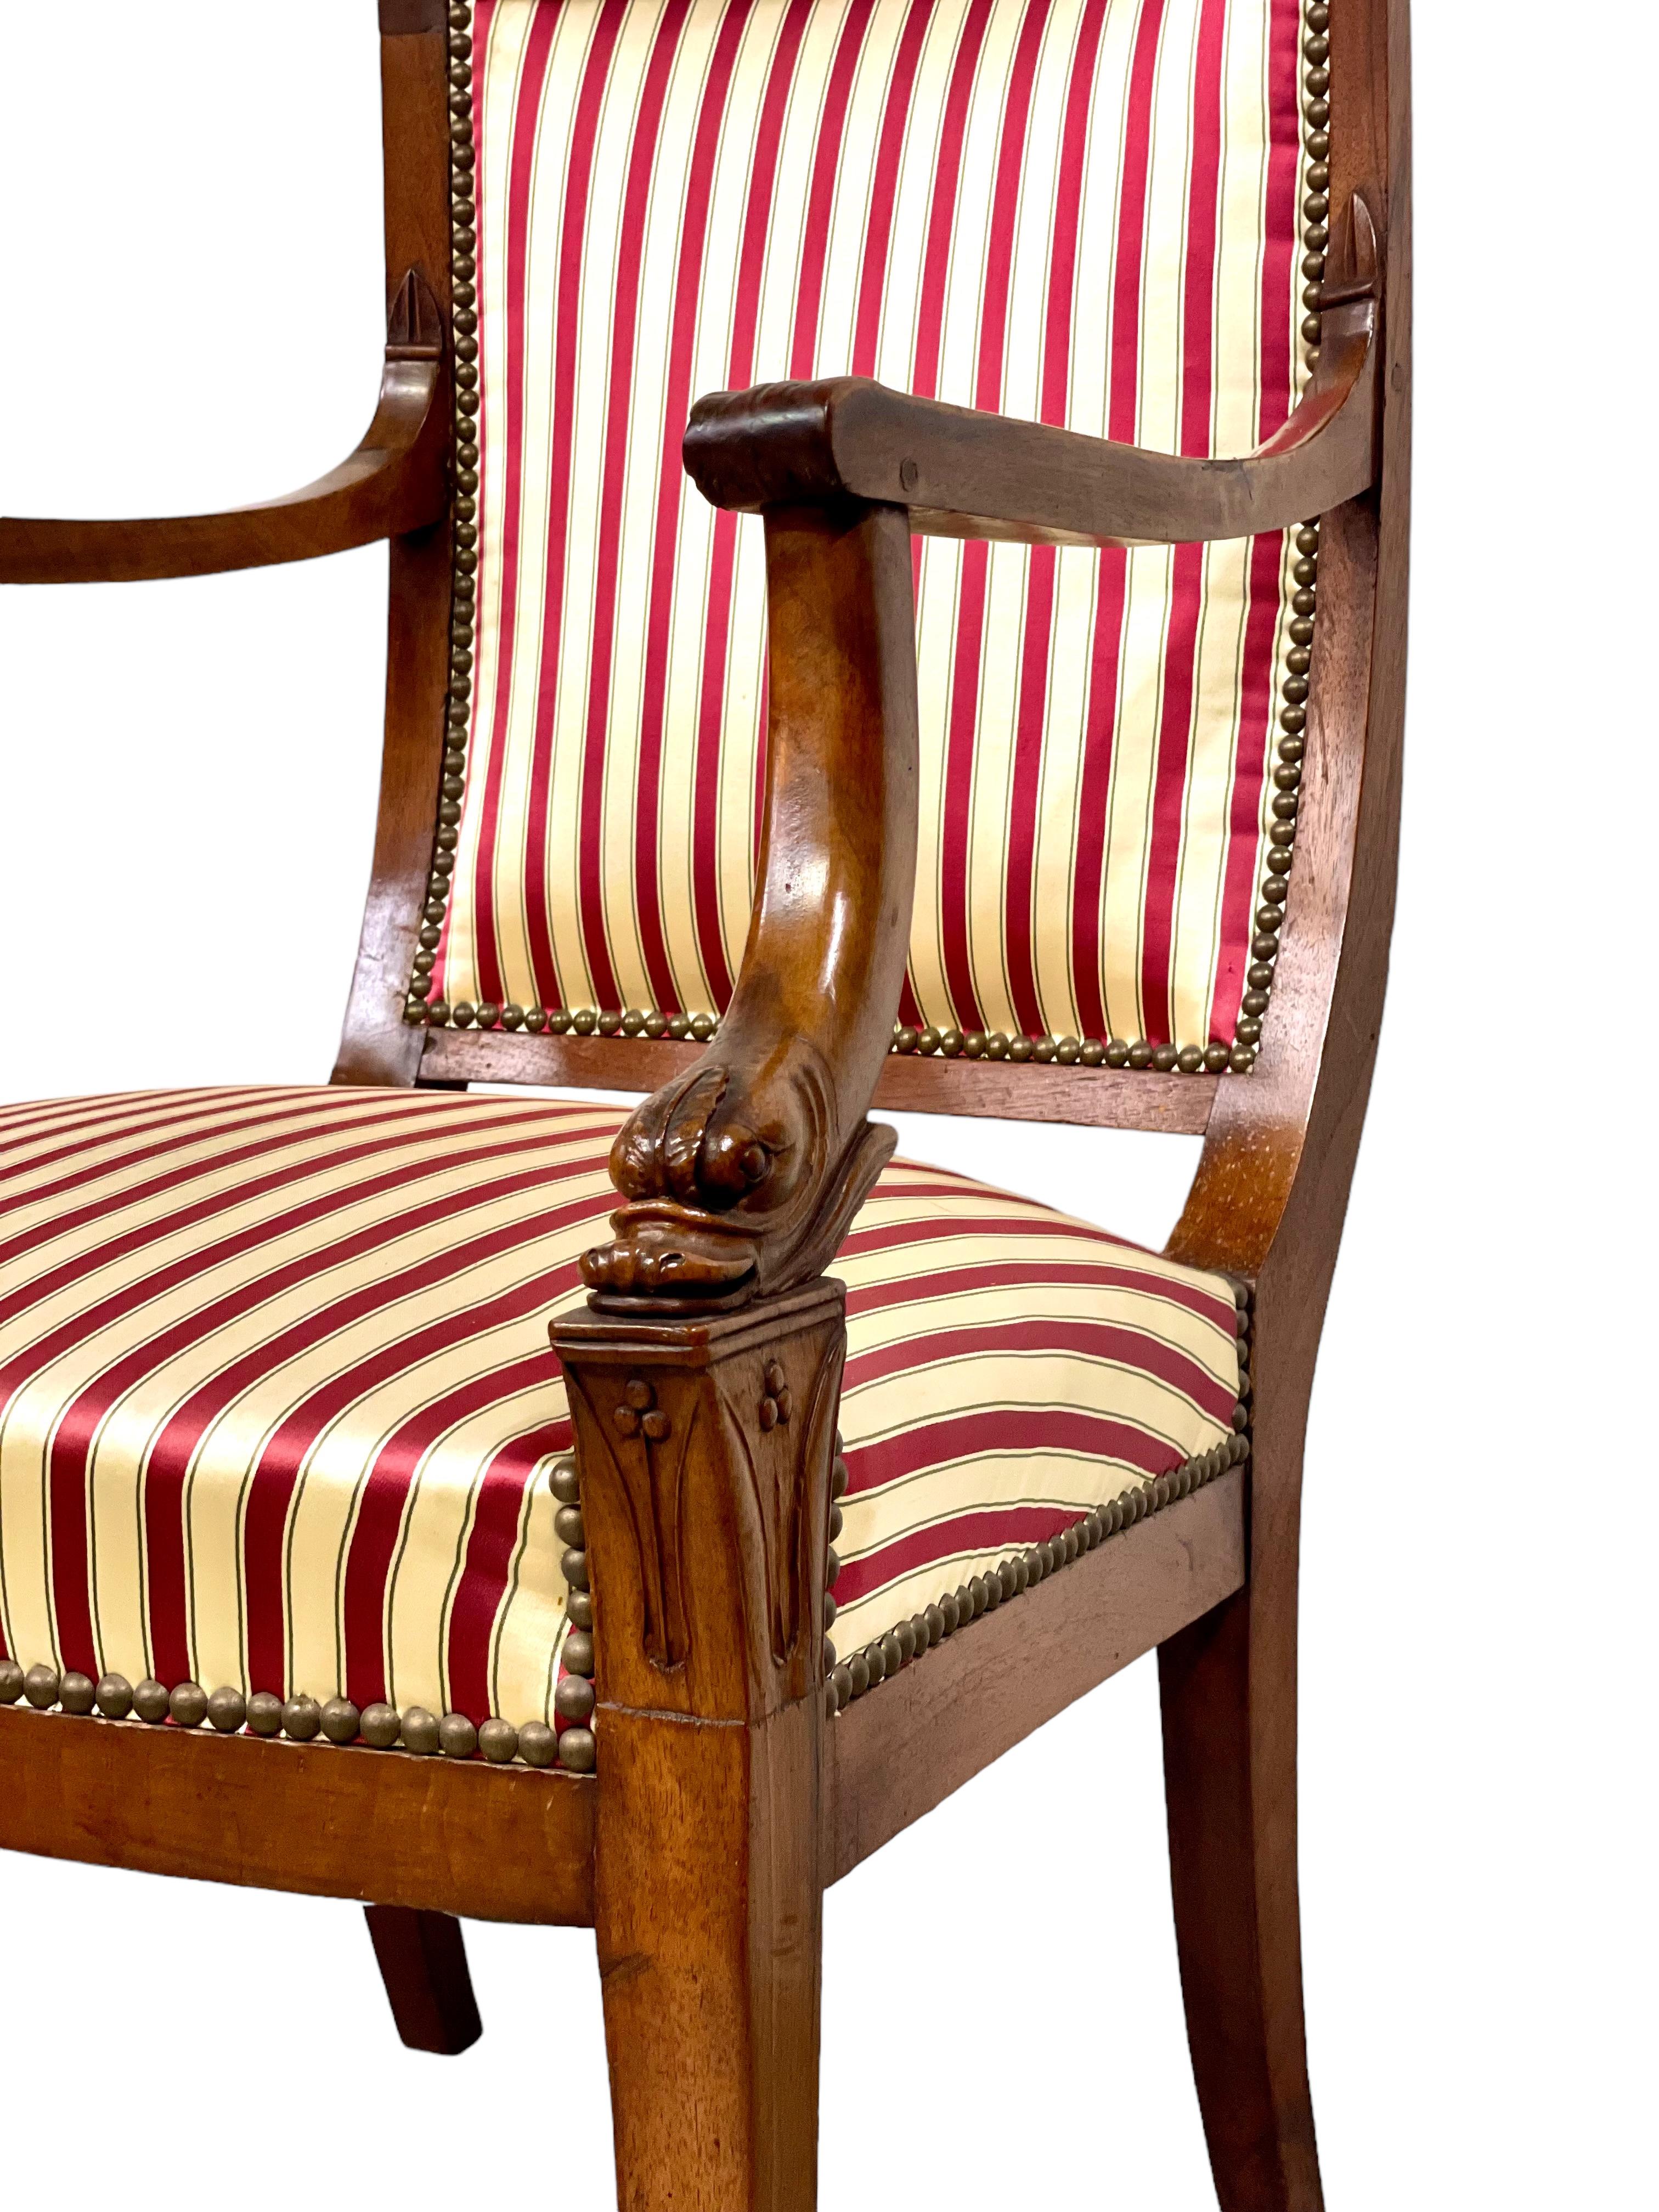 Ein feiner Empire-Sessel mit vier eleganten Säbelbeinen, gepolstert mit vertikalen cremefarbenen und karminroten Streifen und mit kunstvoll geschnitzten Delphinköpfen am Fuß jeder geformten Armlehne. Dieser stattliche und sehr schöne Stuhl hat eine